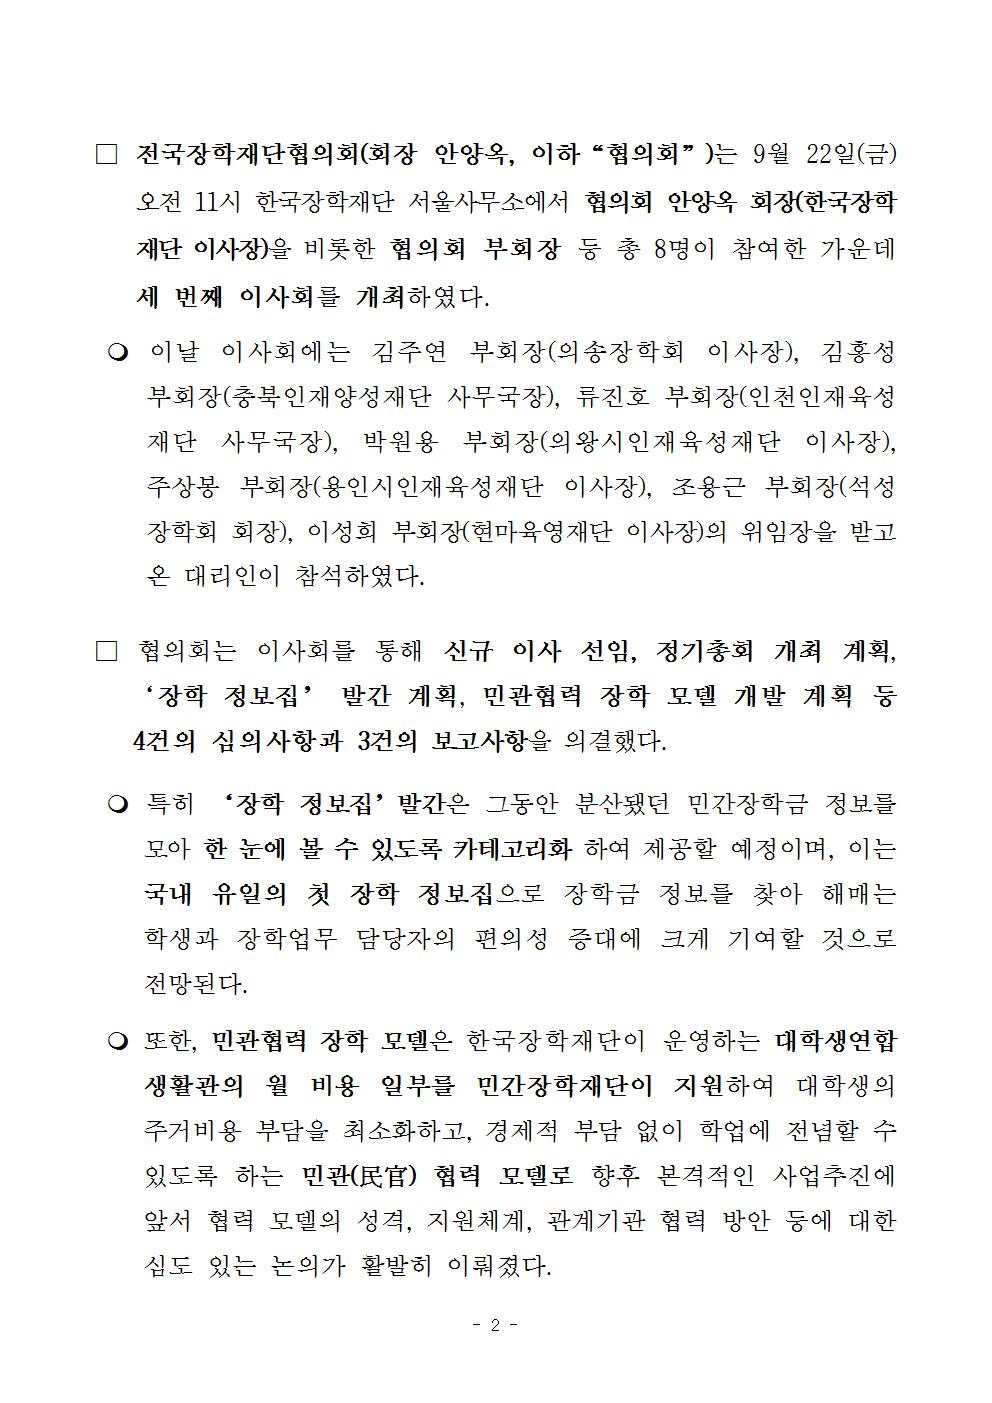 09-23(토)[보도자료] 제3차 전국장학재단협의회 이사회 개최002.jpg